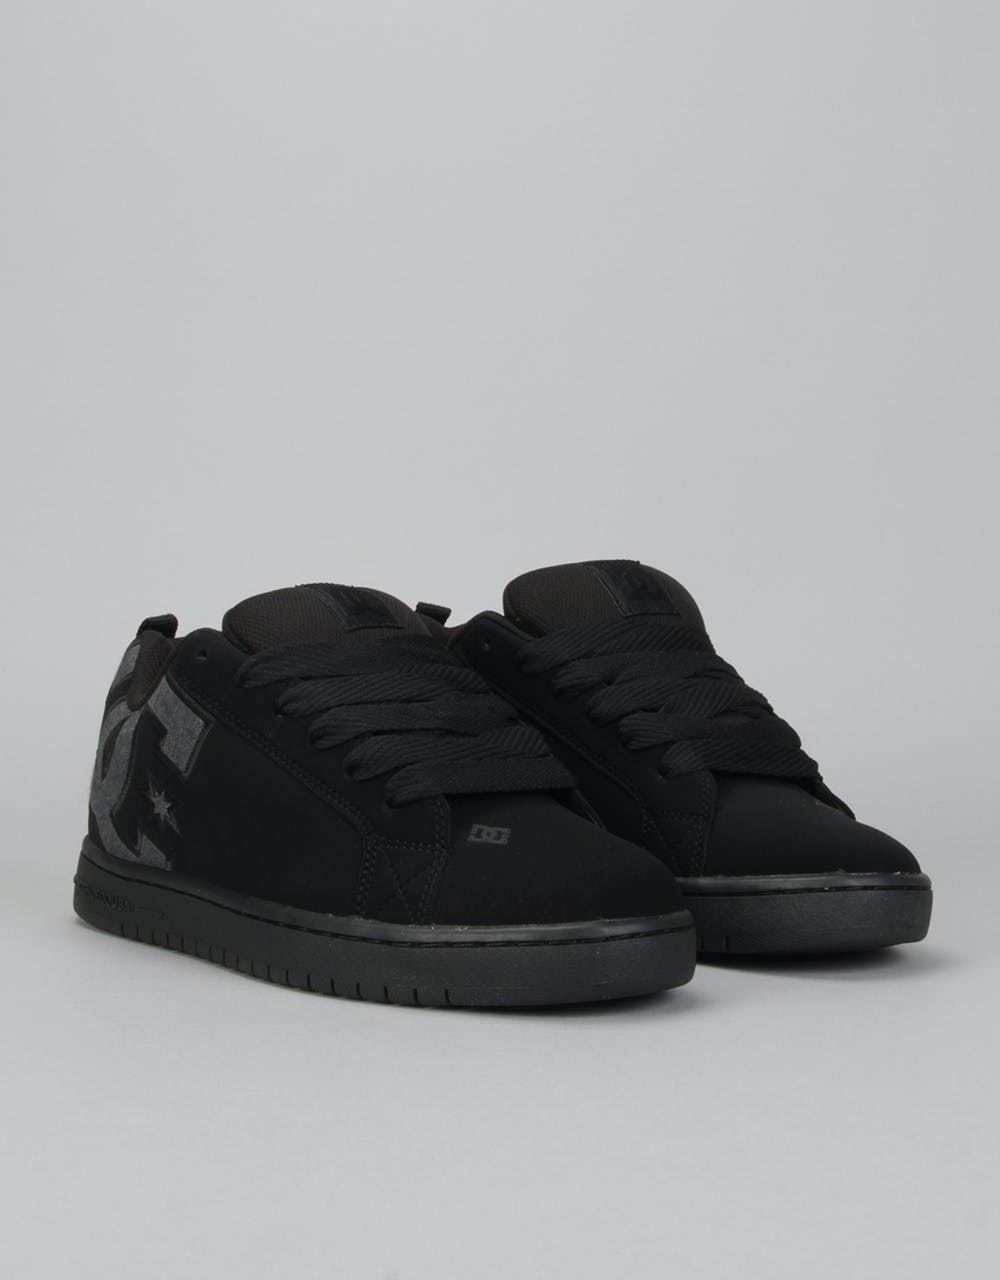 DC Court Graffik SE Skate Shoes - Black Destroy Wash